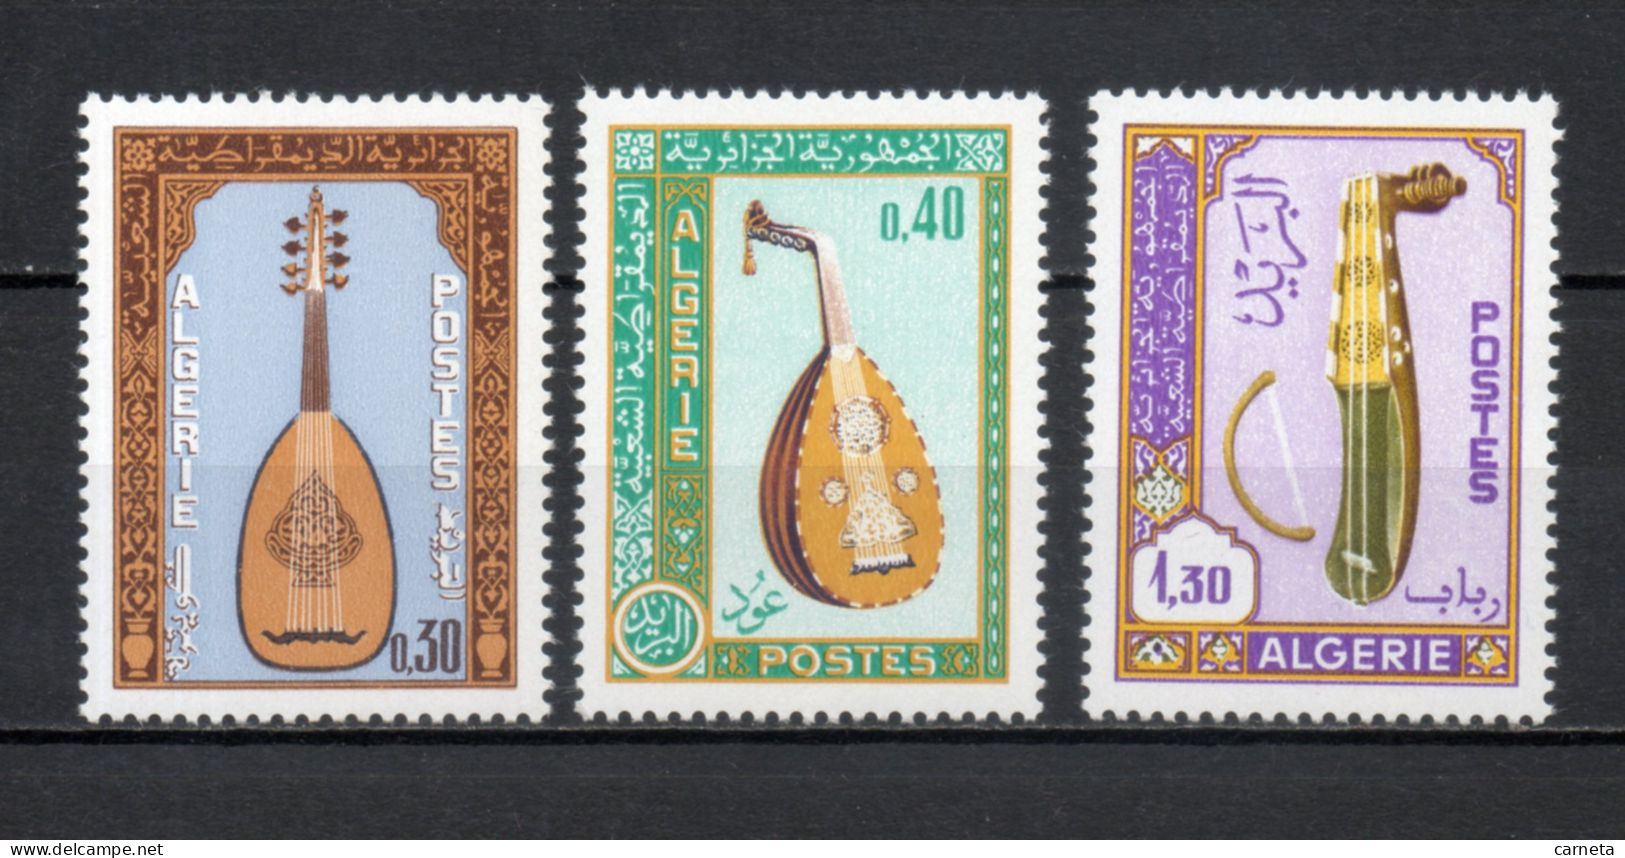 ALGERIE N° 460 à 462   NEUFS SANS CHARNIERE COTE 5.60€    INSTRUMENTS DE MUSIQUE - Algerien (1962-...)